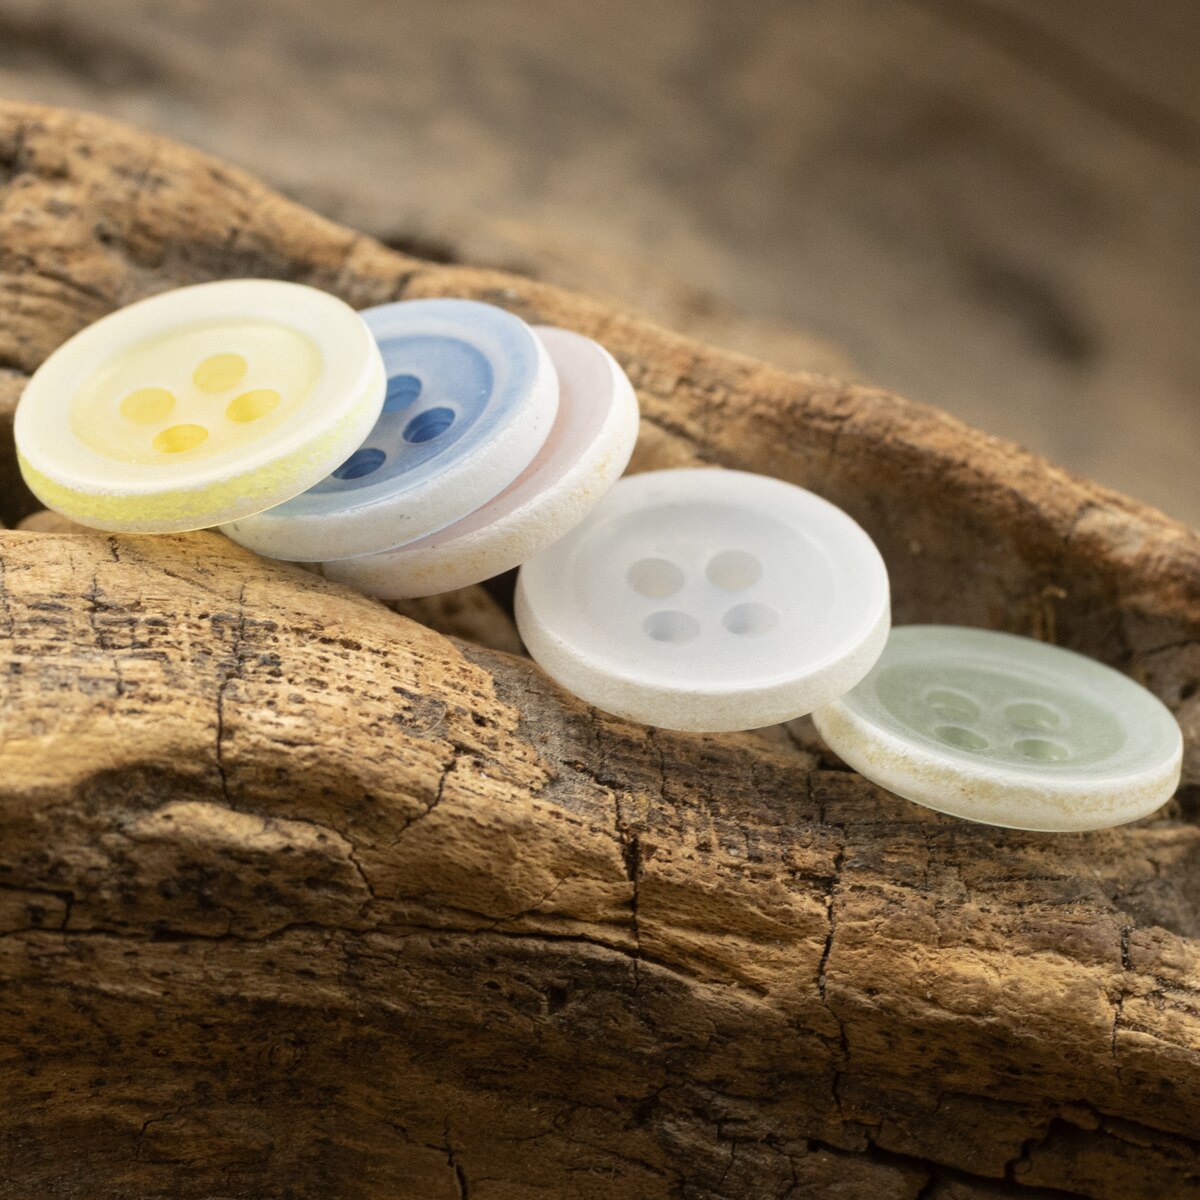 50pcs Designer Urea Button for Summer Shirts Kids Children Buttons Craft Supplies DIY  Buttons